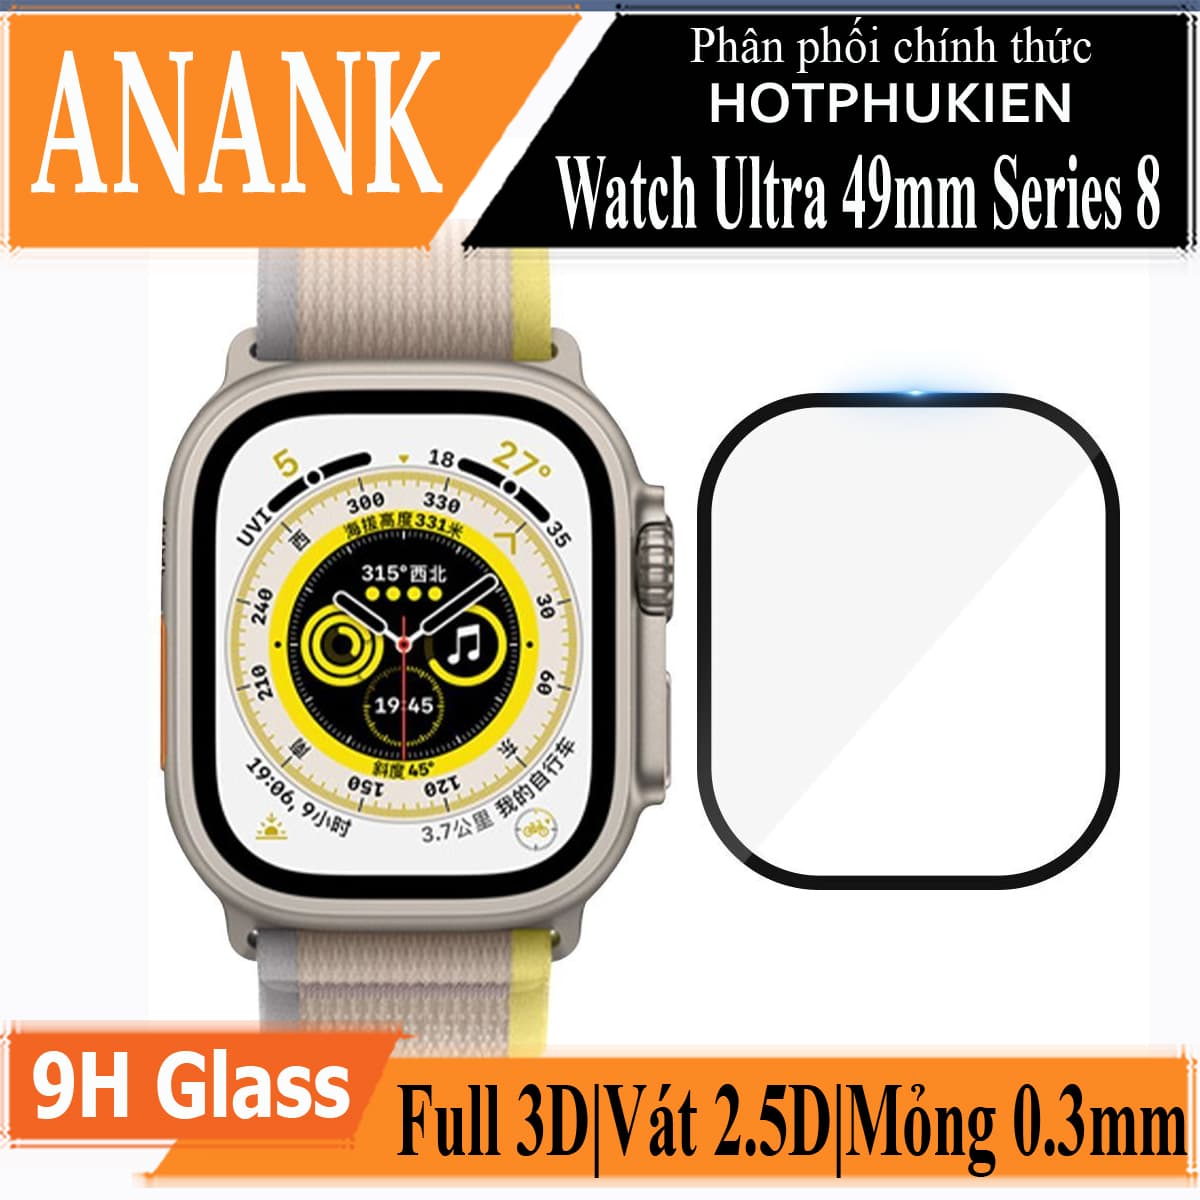 Miếng dán kính cường lực Full 3D cho Apple Watch Ultra 49mm Series 8 hiệu ANANK Protector Pro